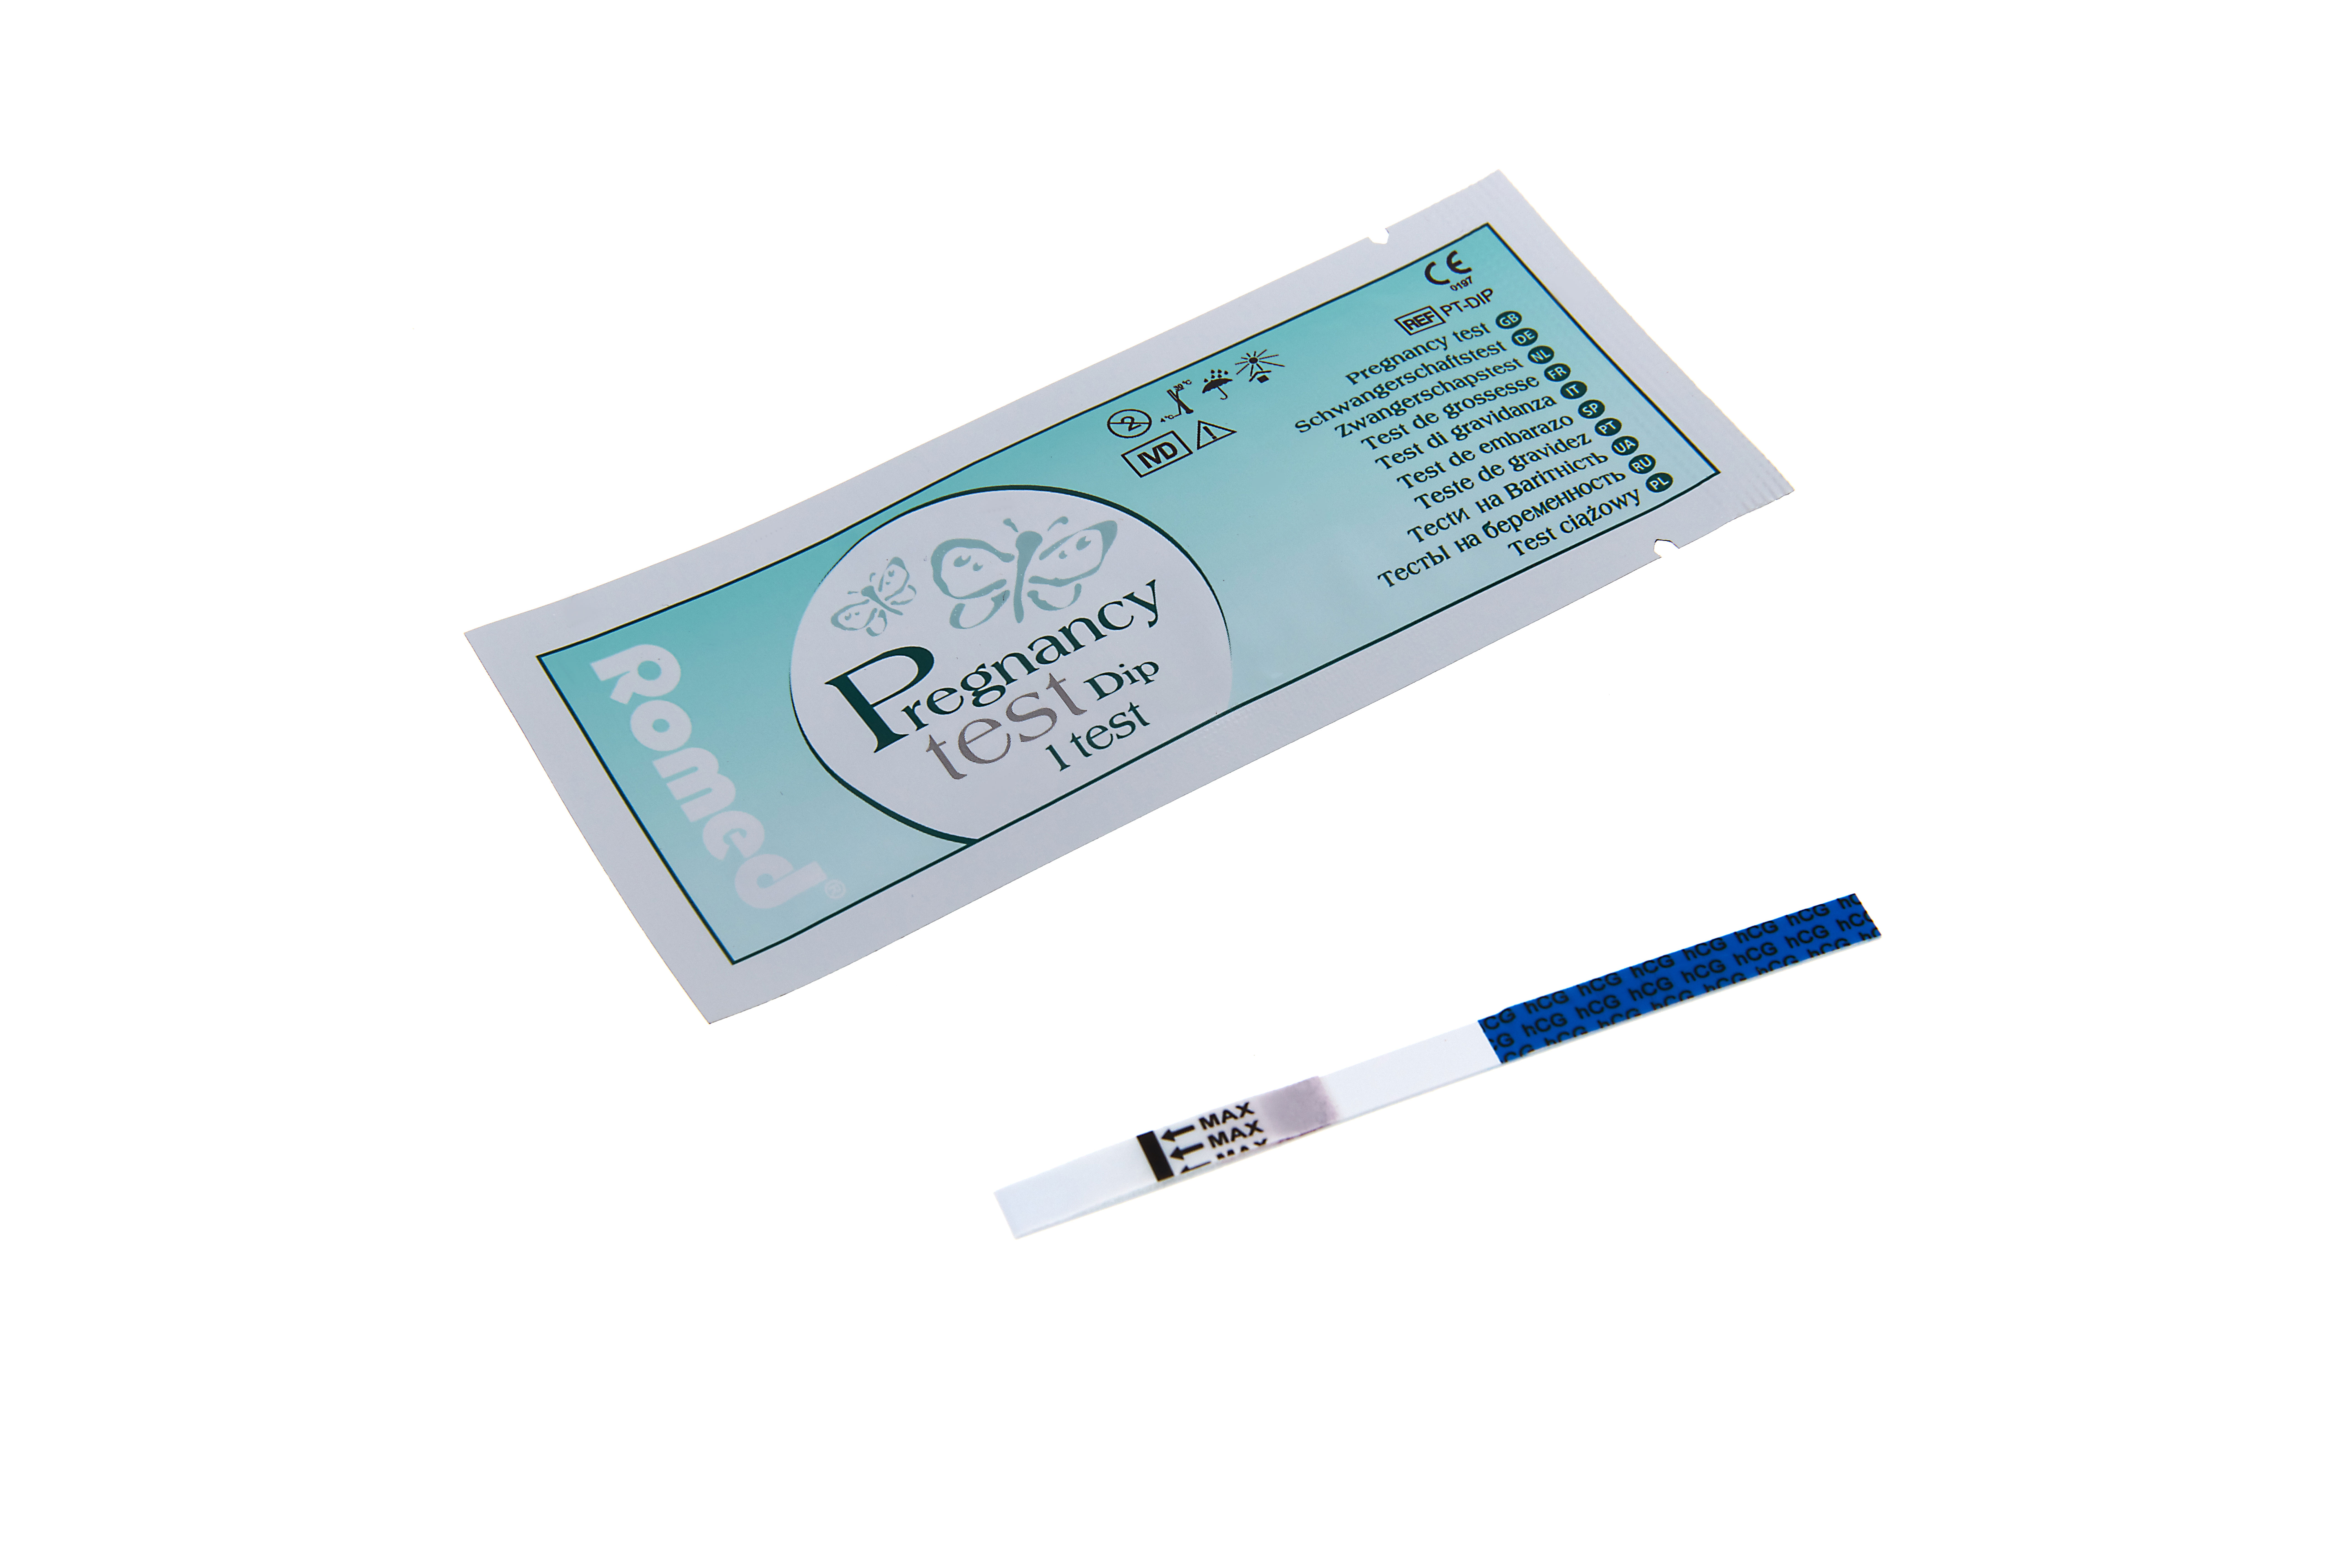 PT-DIP1000 Testes de gravidez Romed, teste de imersão, embalagem a granel, 1000 un. por caixa de envio.